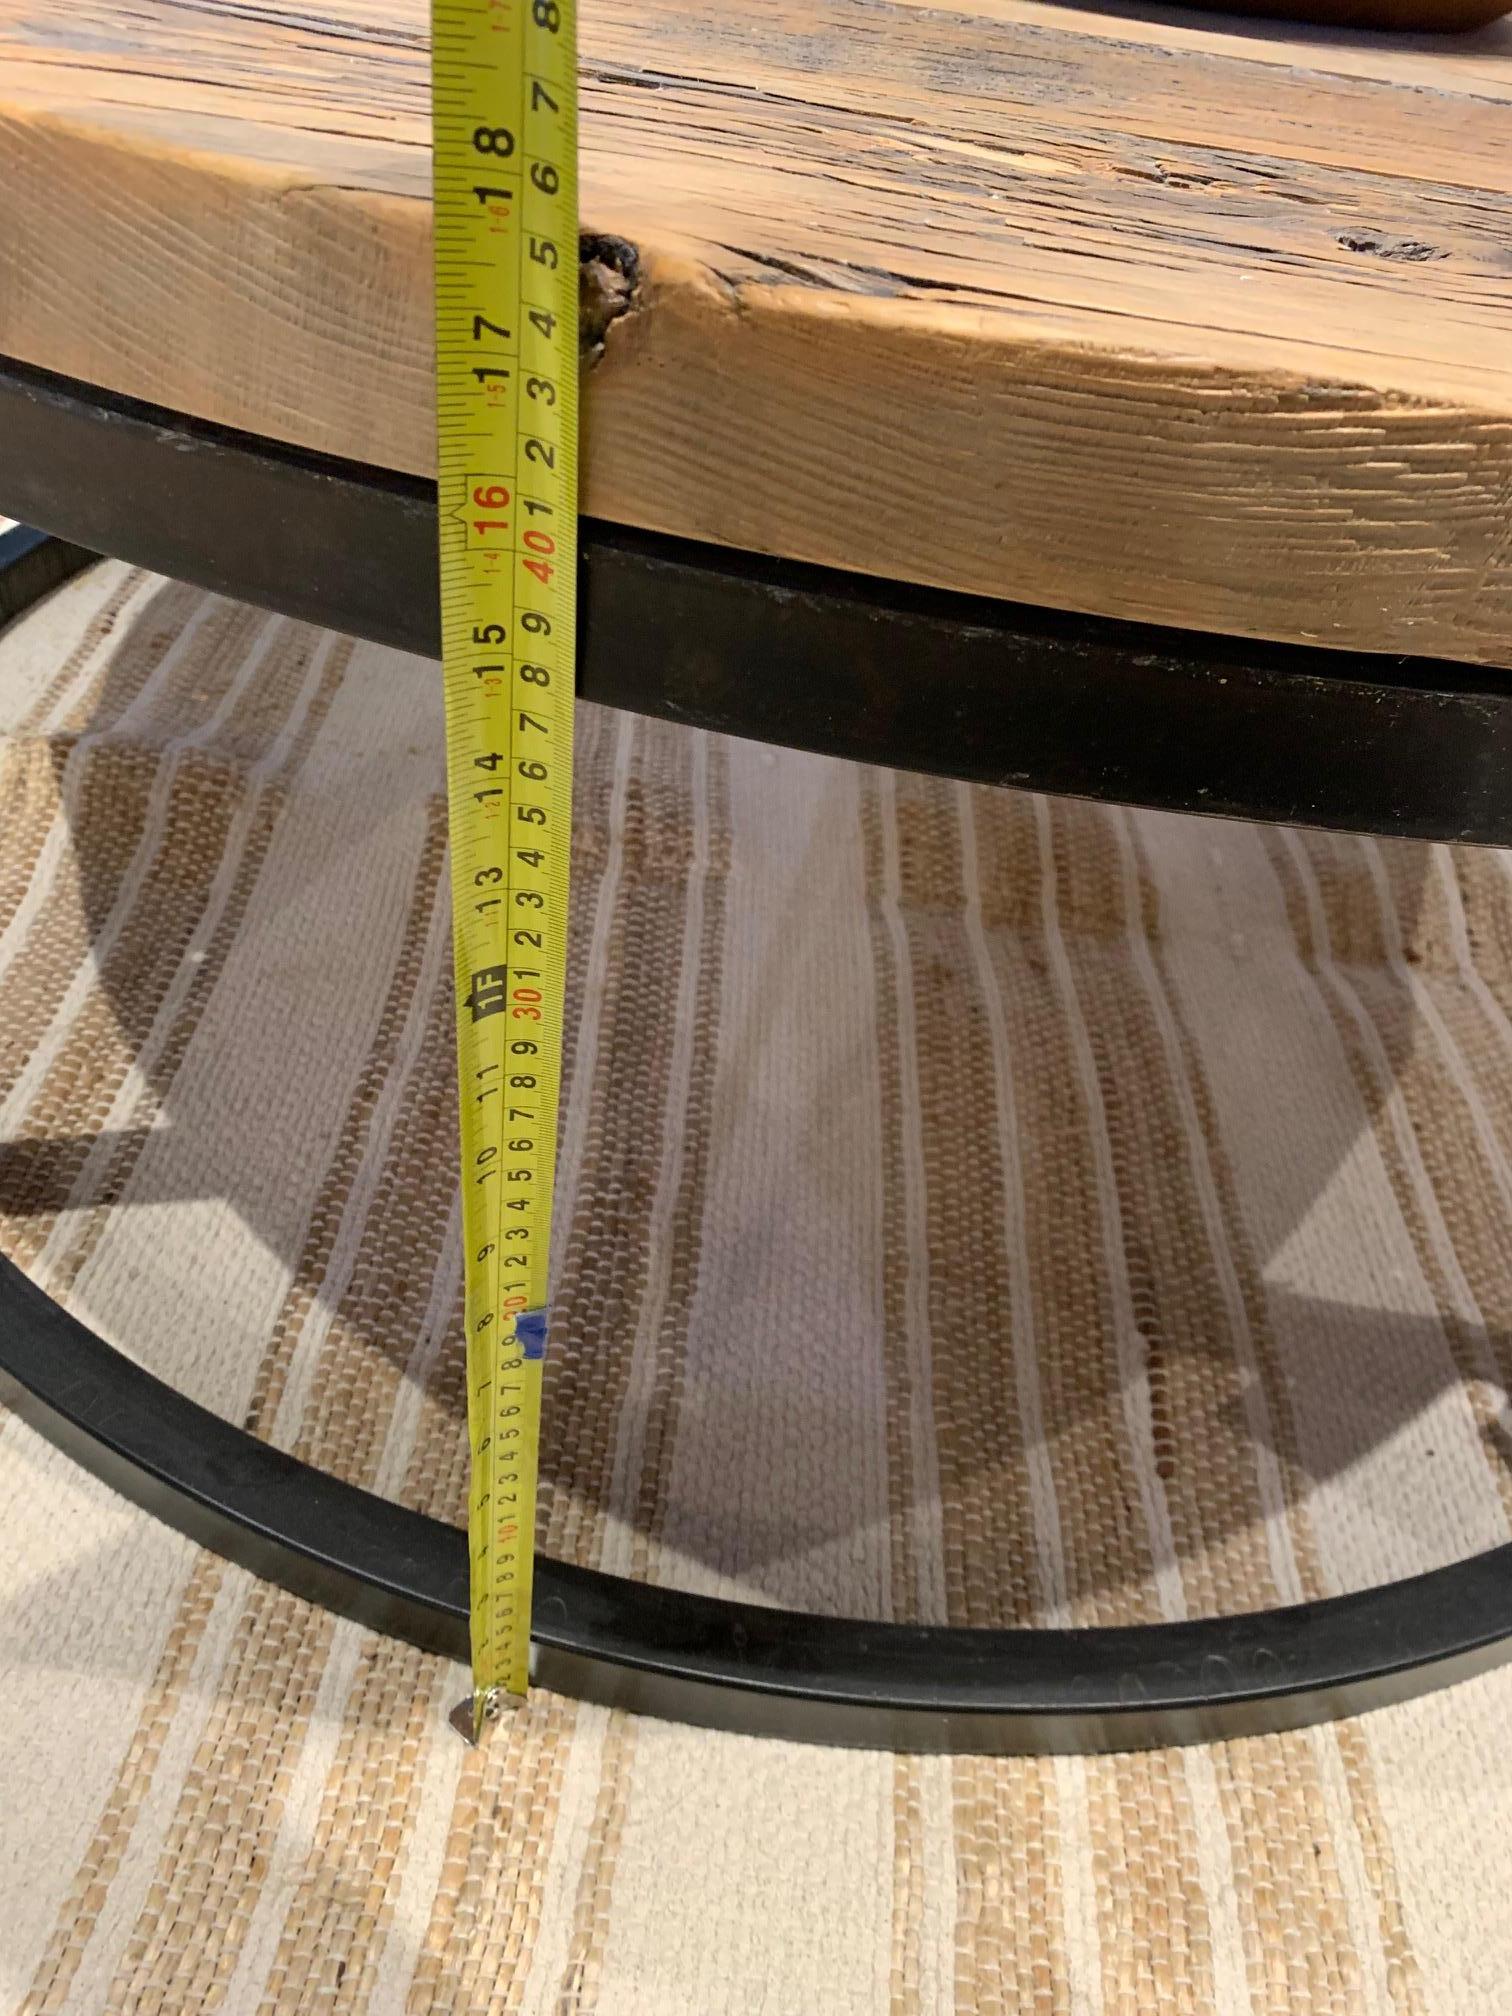 La table basse ronde en bois de barnum peut être commandée sur mesure dans n'importe quelle taille et finition.

Commandes personnalisées uniquement. Modèle d'exposition non disponible à la vente. 
